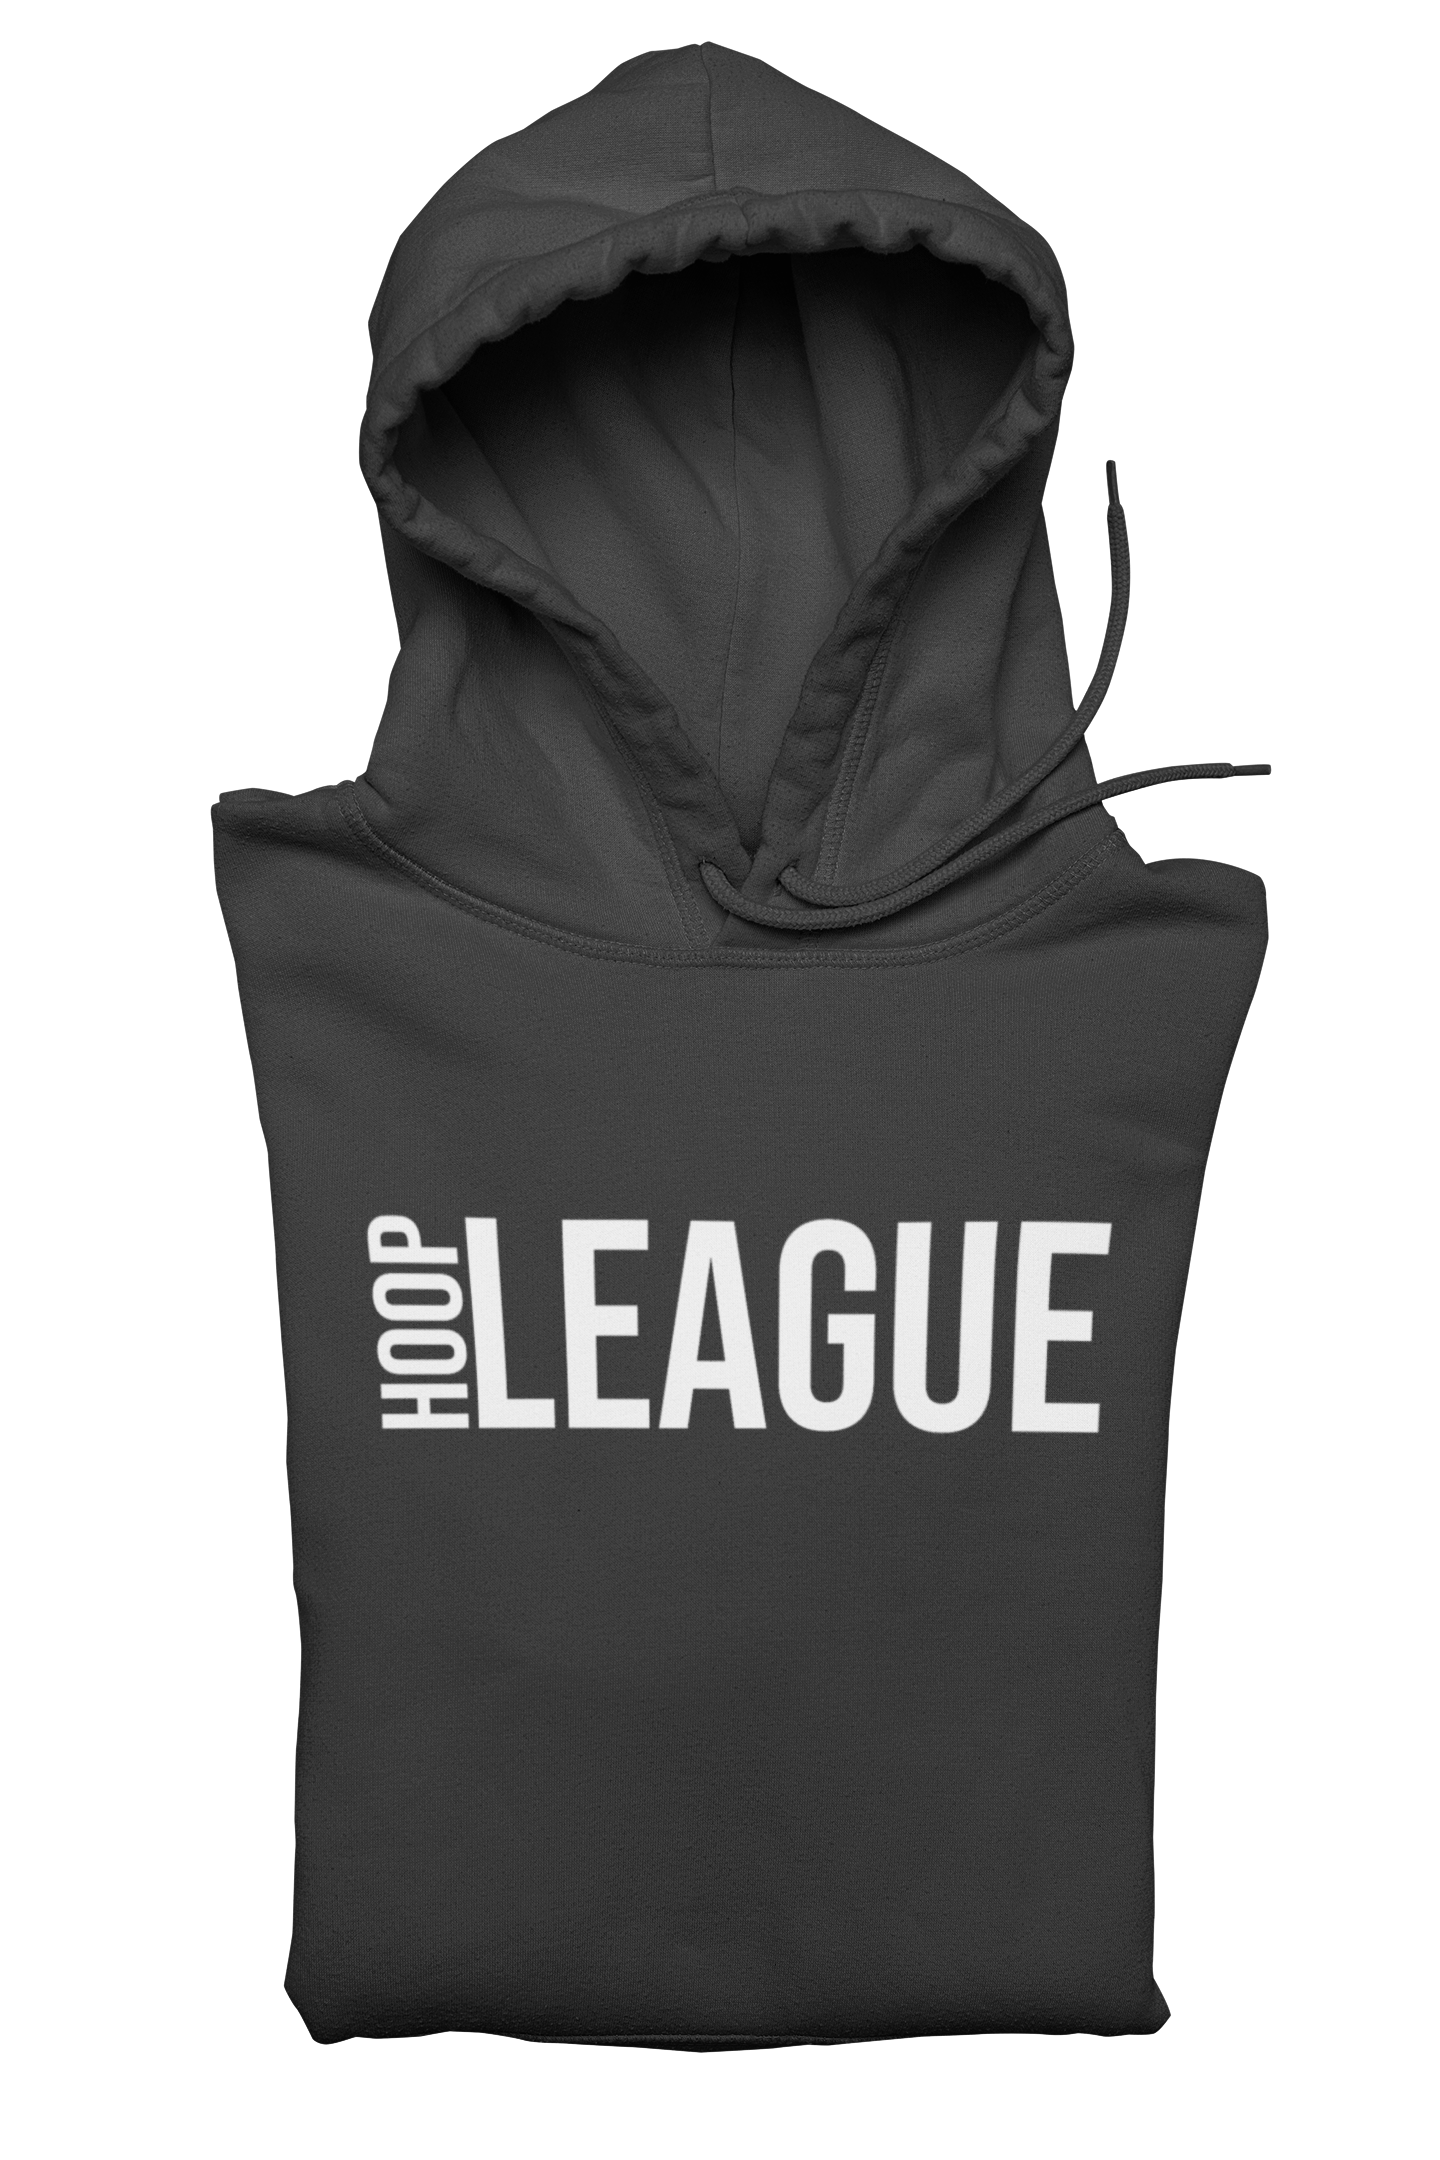 Hoop League Pullover Hoodie Black | Premium Hoodie 